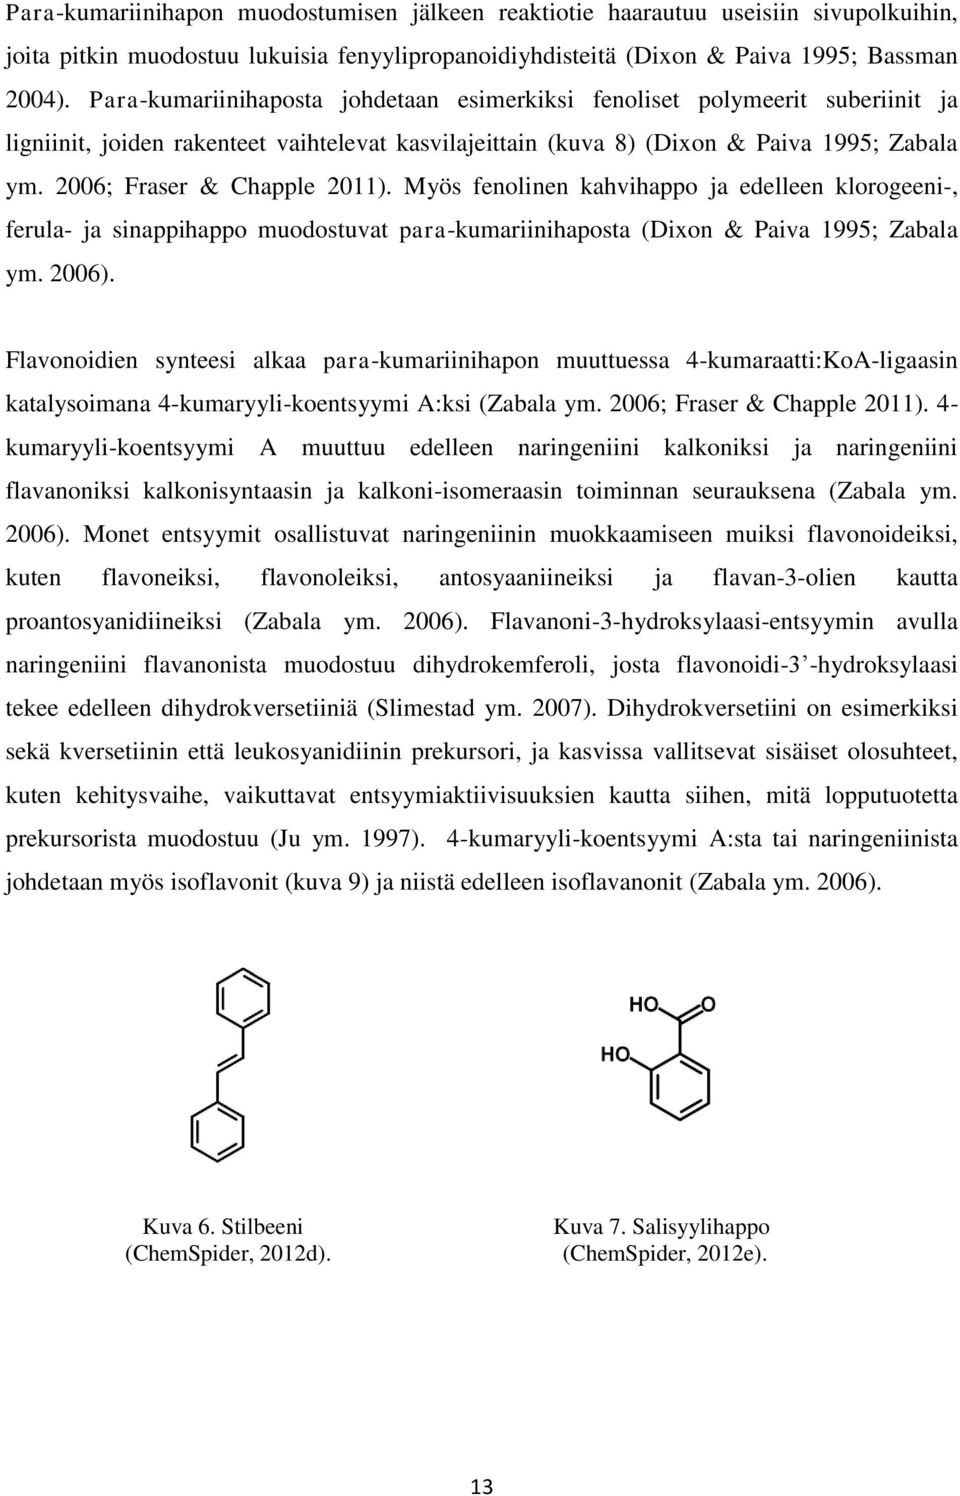 2006; Fraser & Chapple 2011). Myös fenolinen kahvihappo ja edelleen klorogeeni-, ferula- ja sinappihappo muodostuvat para-kumariinihaposta (Dixon & Paiva 1995; Zabala ym. 2006).